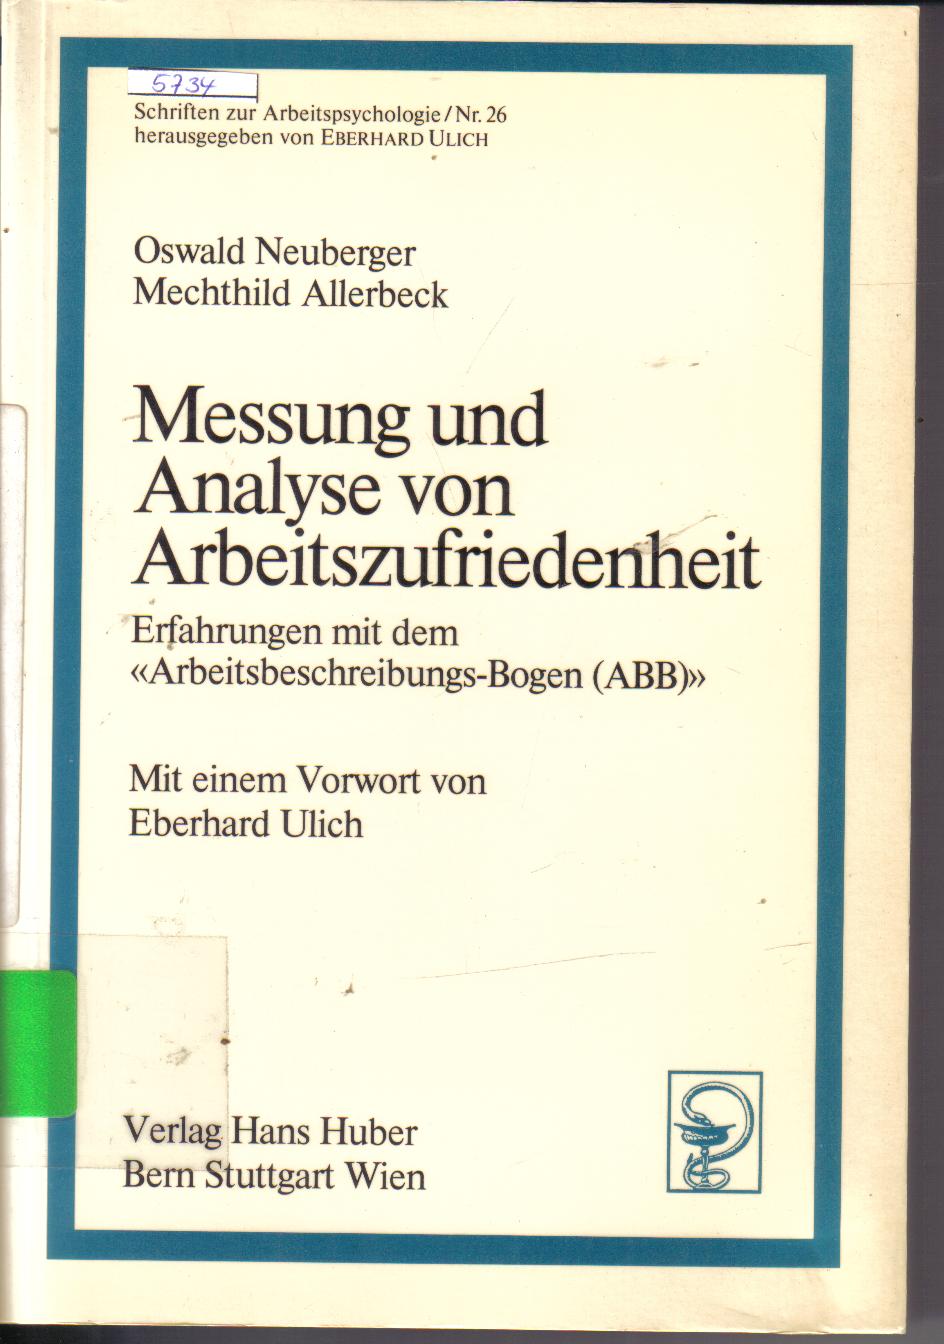 Messung und Analyse von ArbeitszufriedenheitOswald Neuberger/ Mechthild Allerbeck